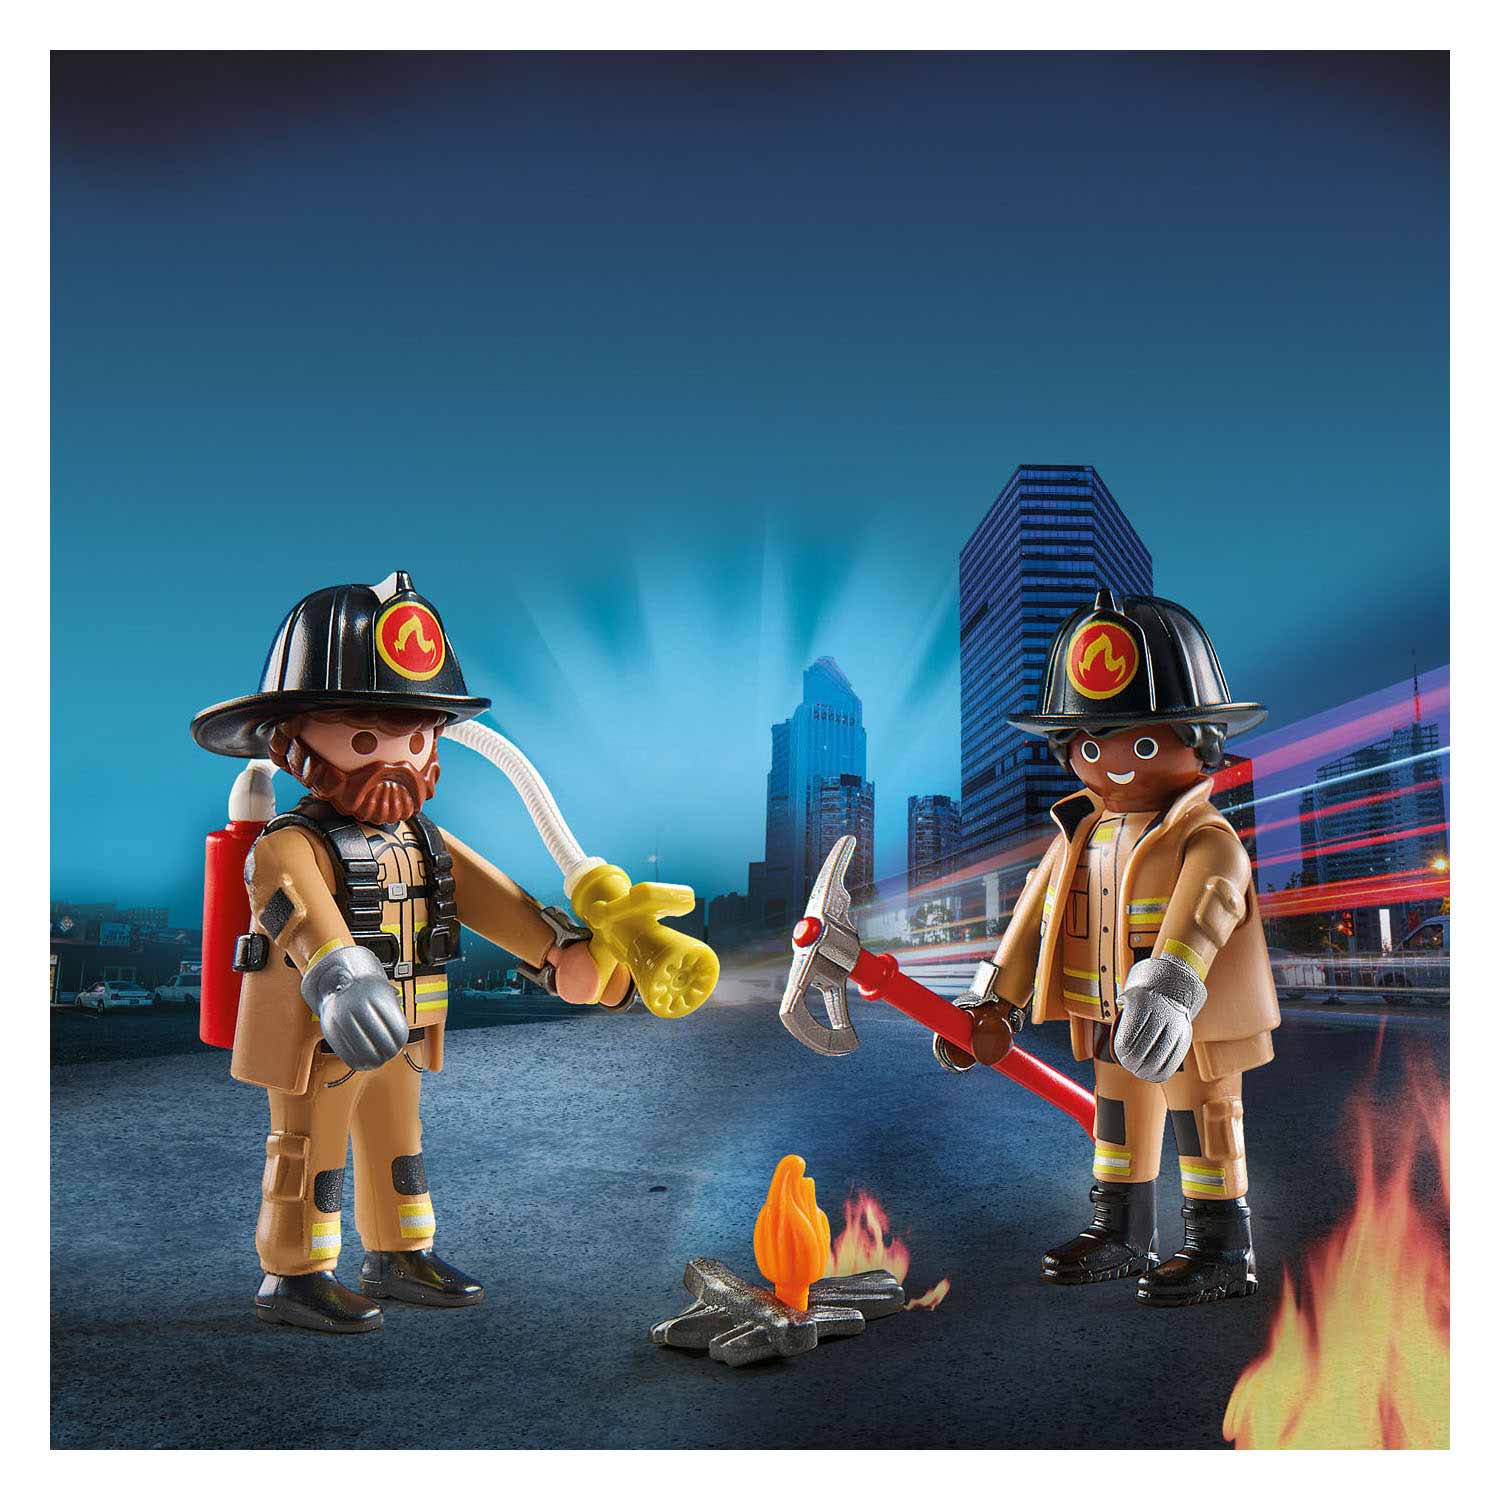 Playmobil City Action Feuerwehrleute – 71207